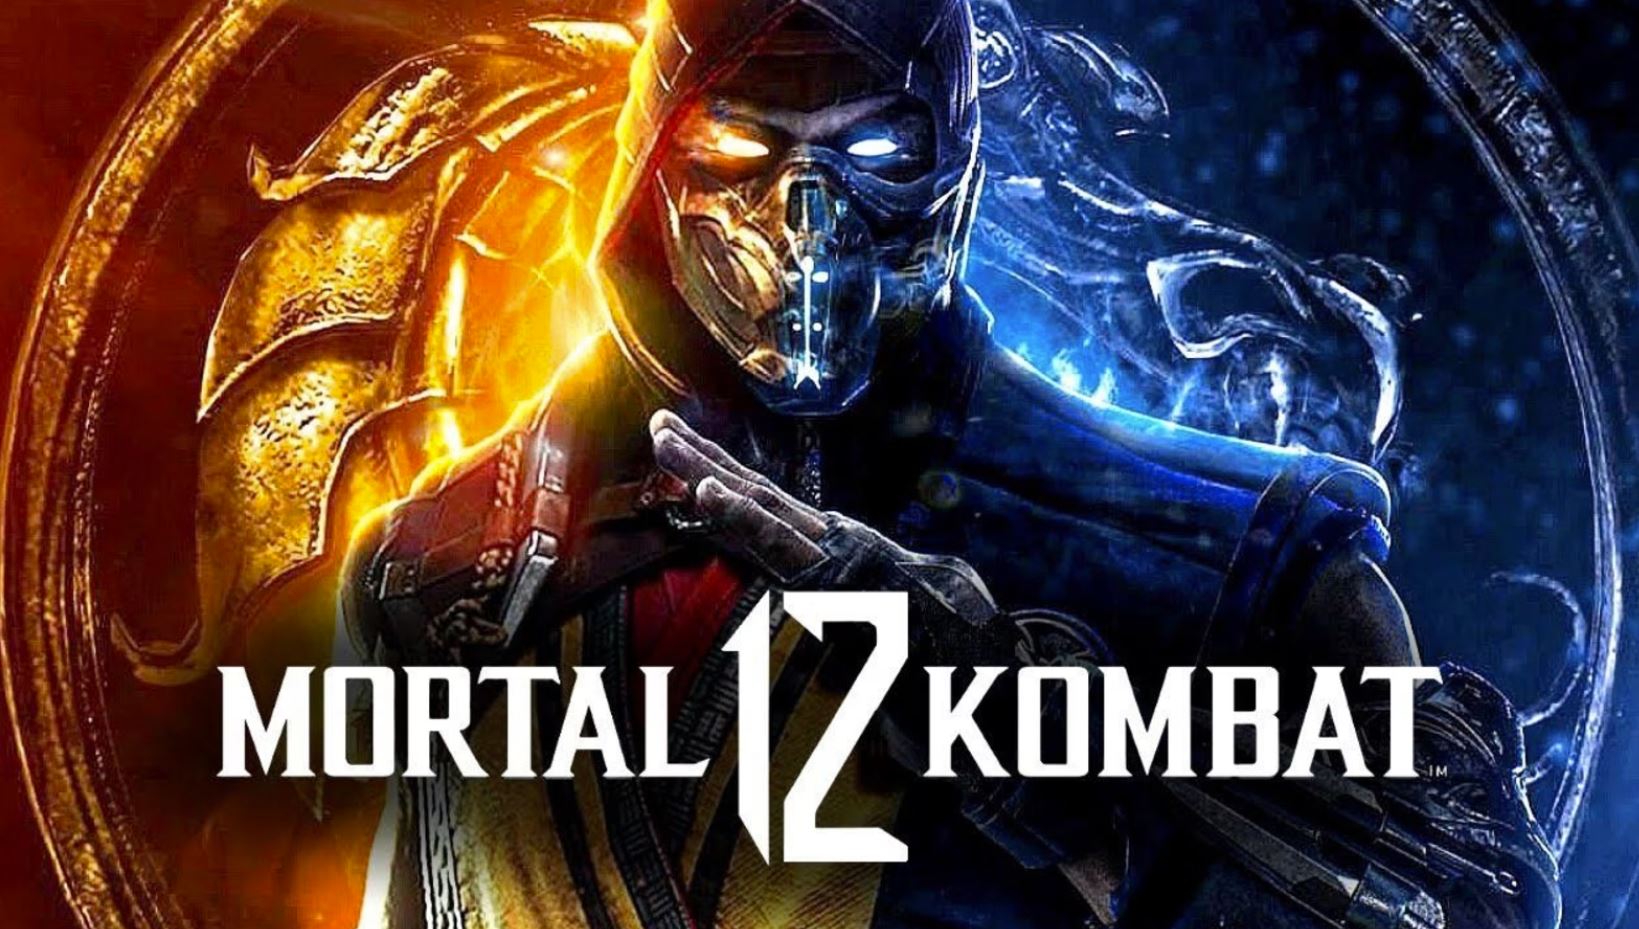 Mortal Kombat 12 reveal soon arabgamerz عرب جيمرز الكشف مورتال كومبات 12 قريبا